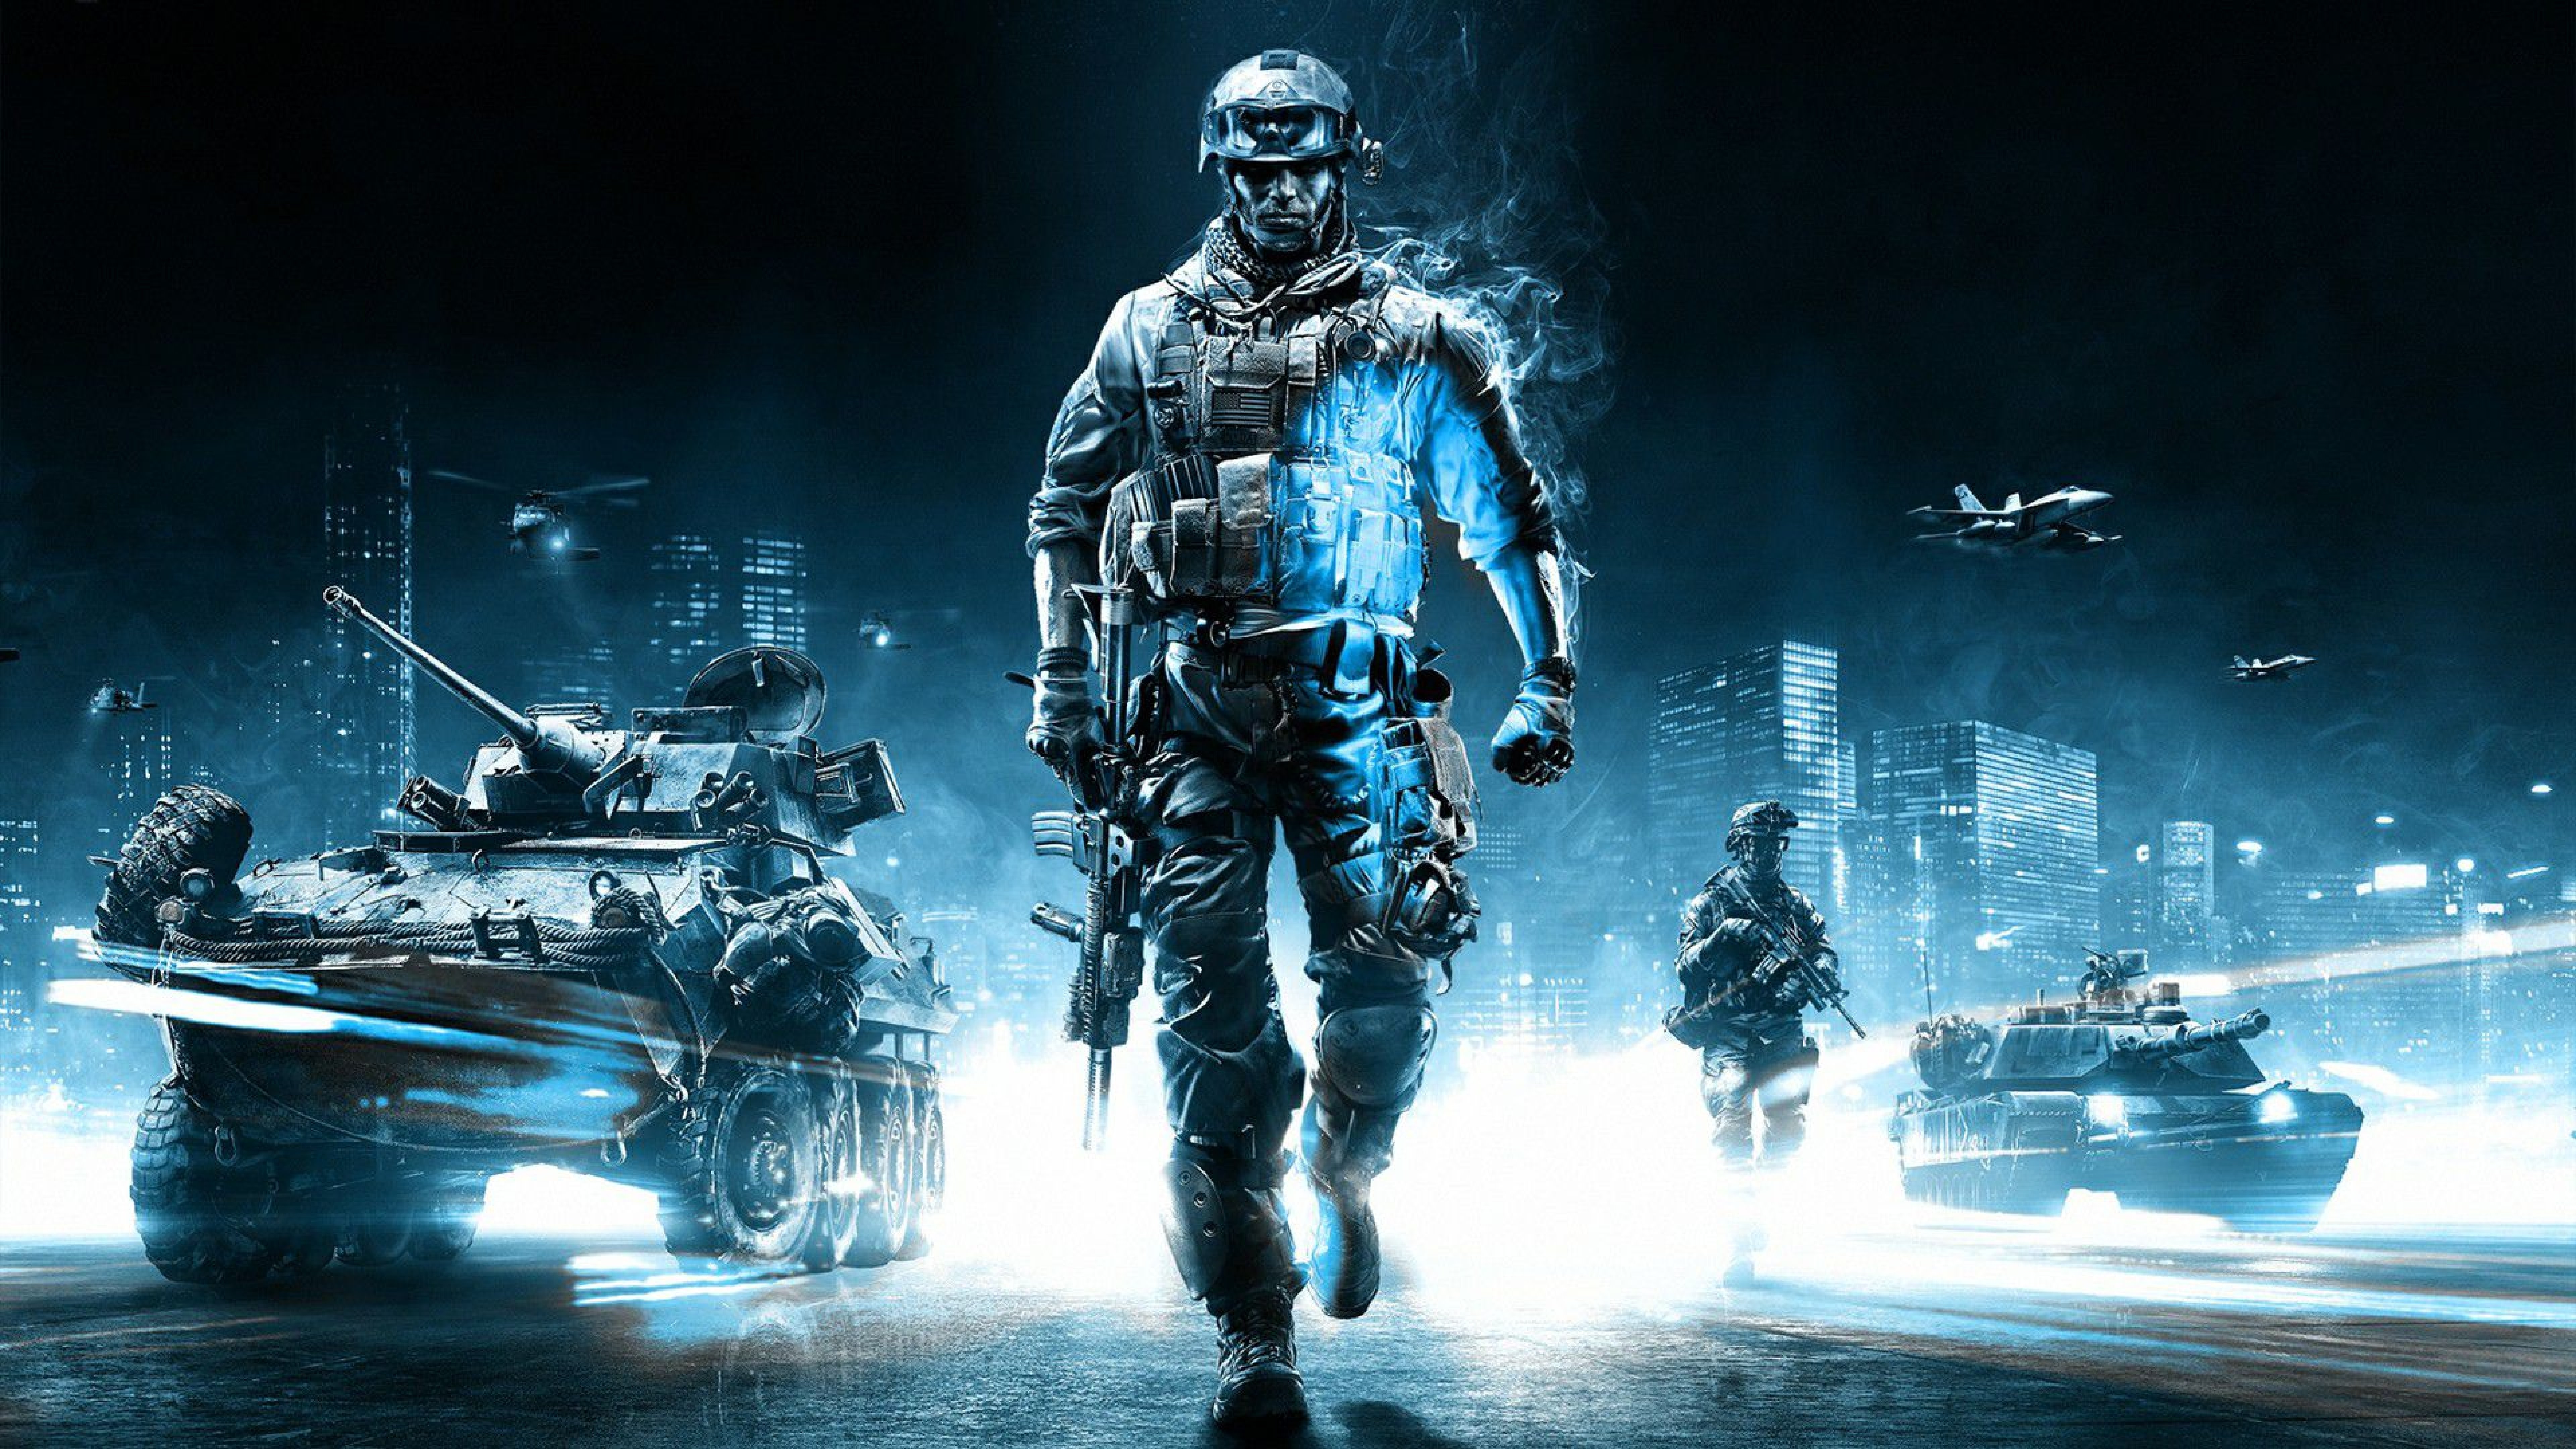 Battlefield 3 Tank Battle Ultra HD Desktop Background Wallpaper for